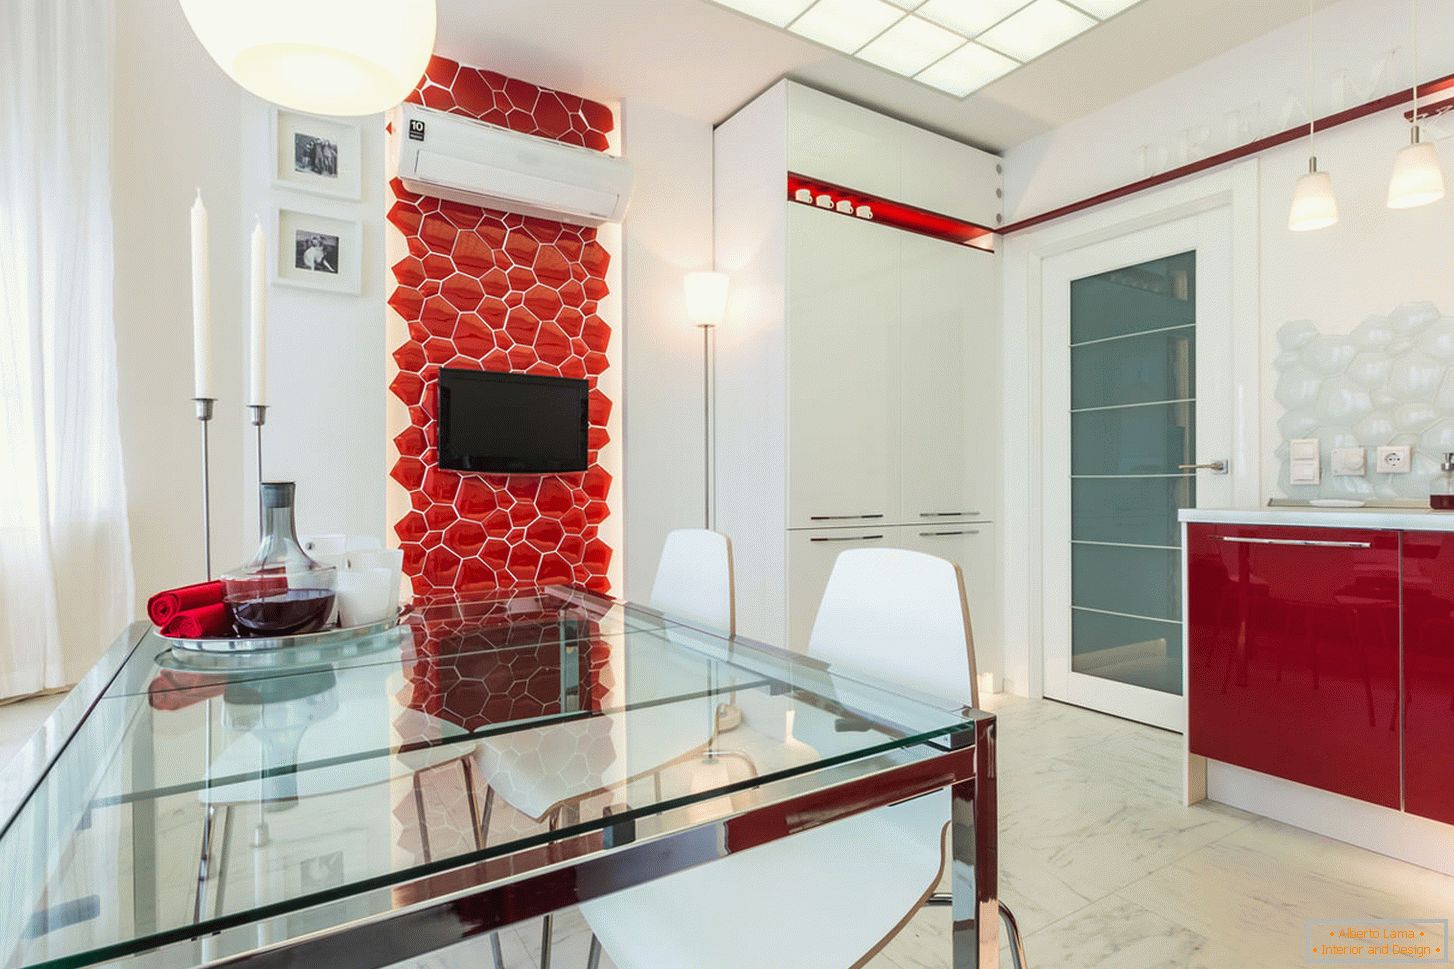 Chic belső konyha fehér és piros színekben